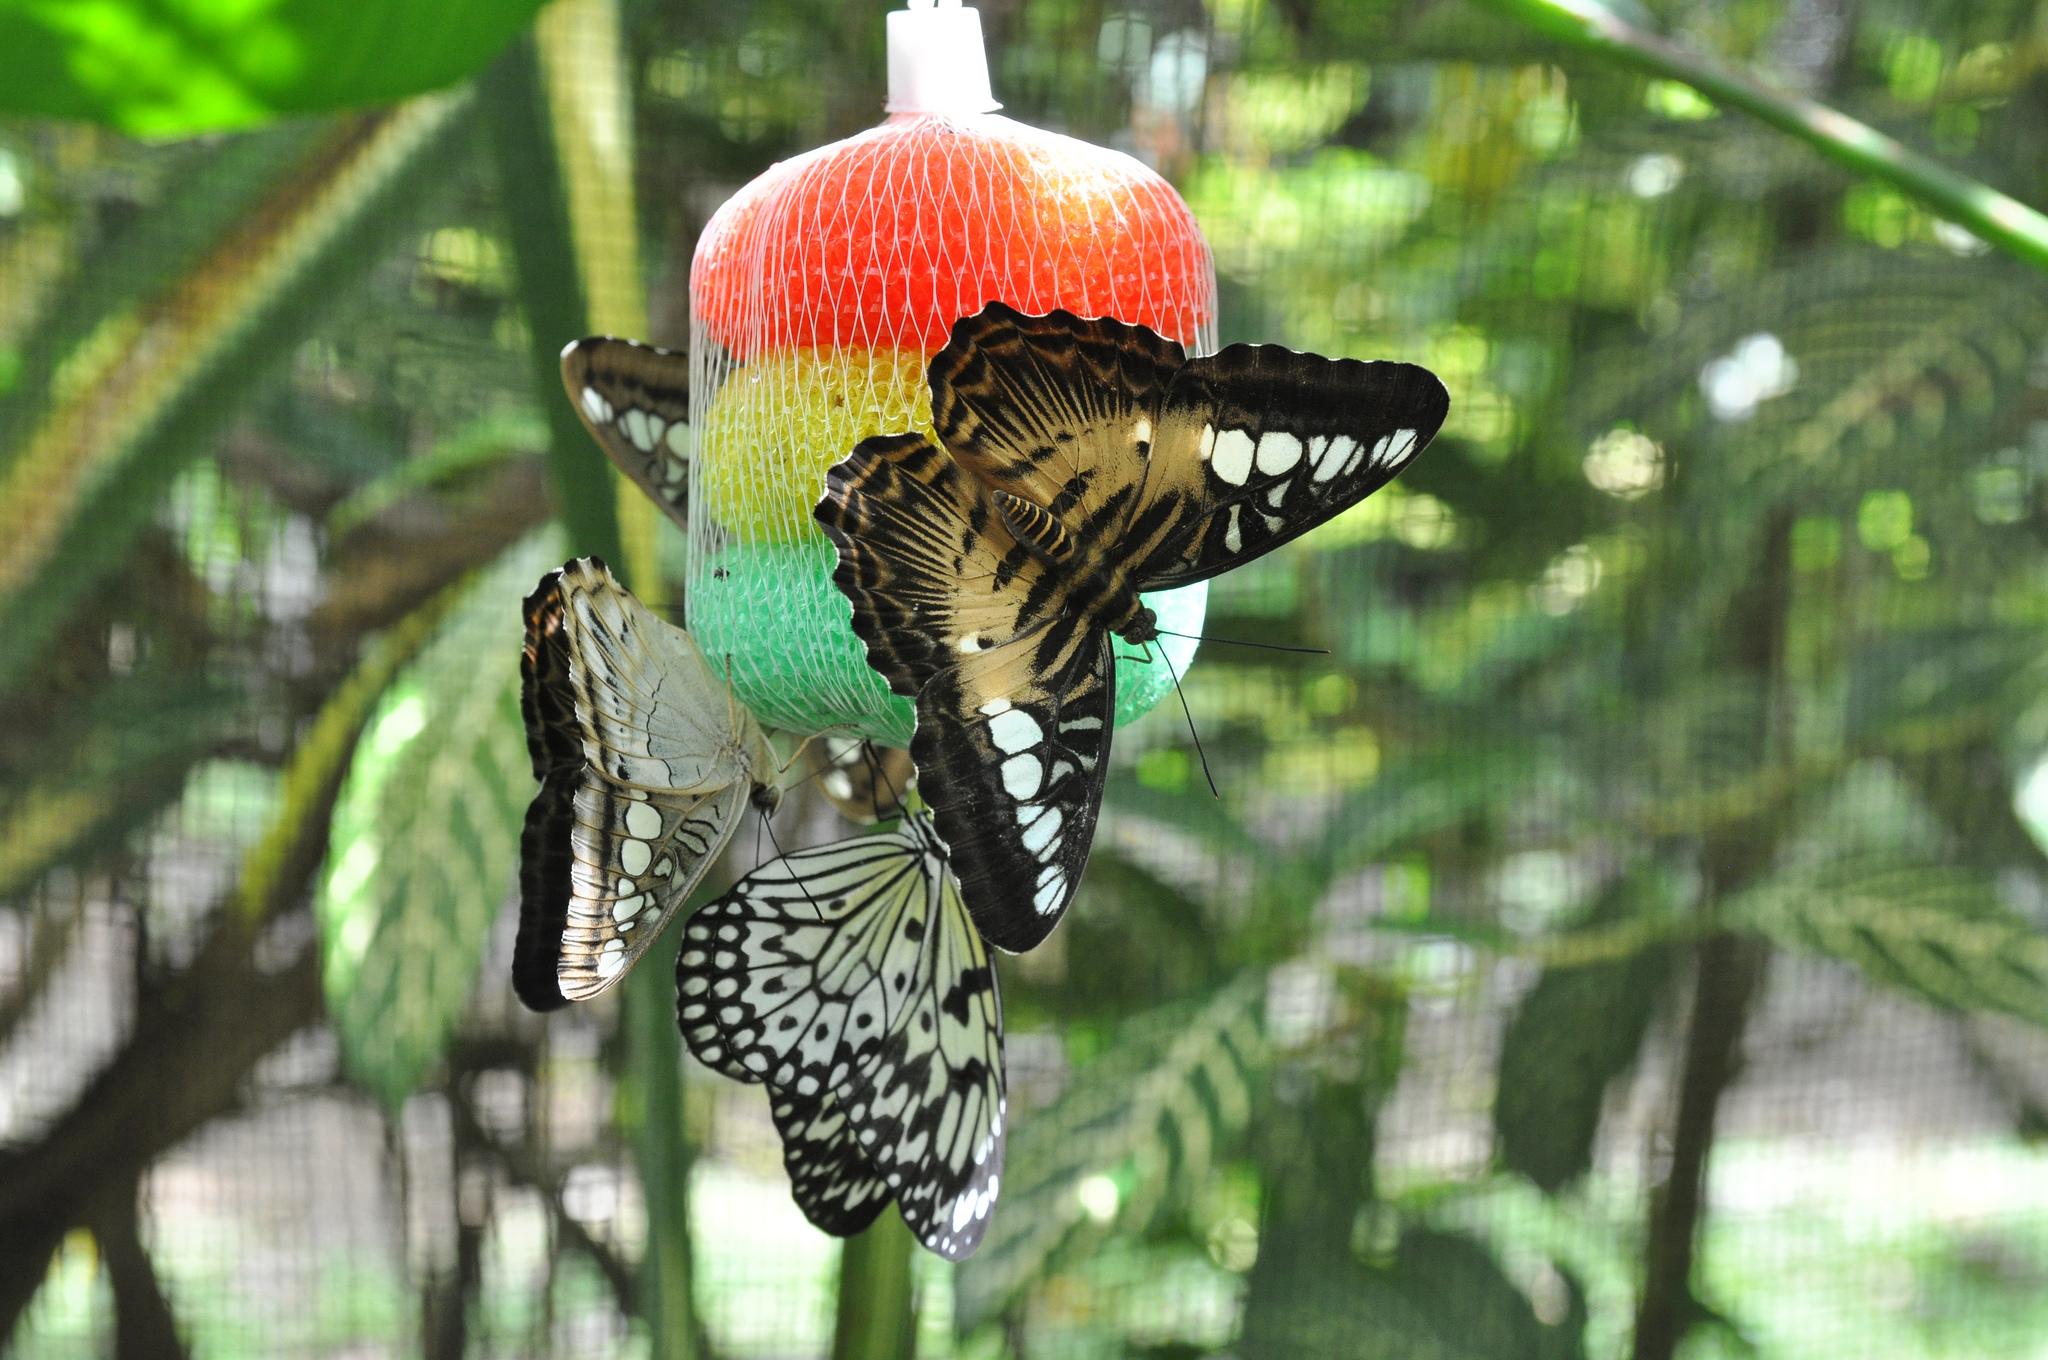 Simply Butterflies Conservation Center